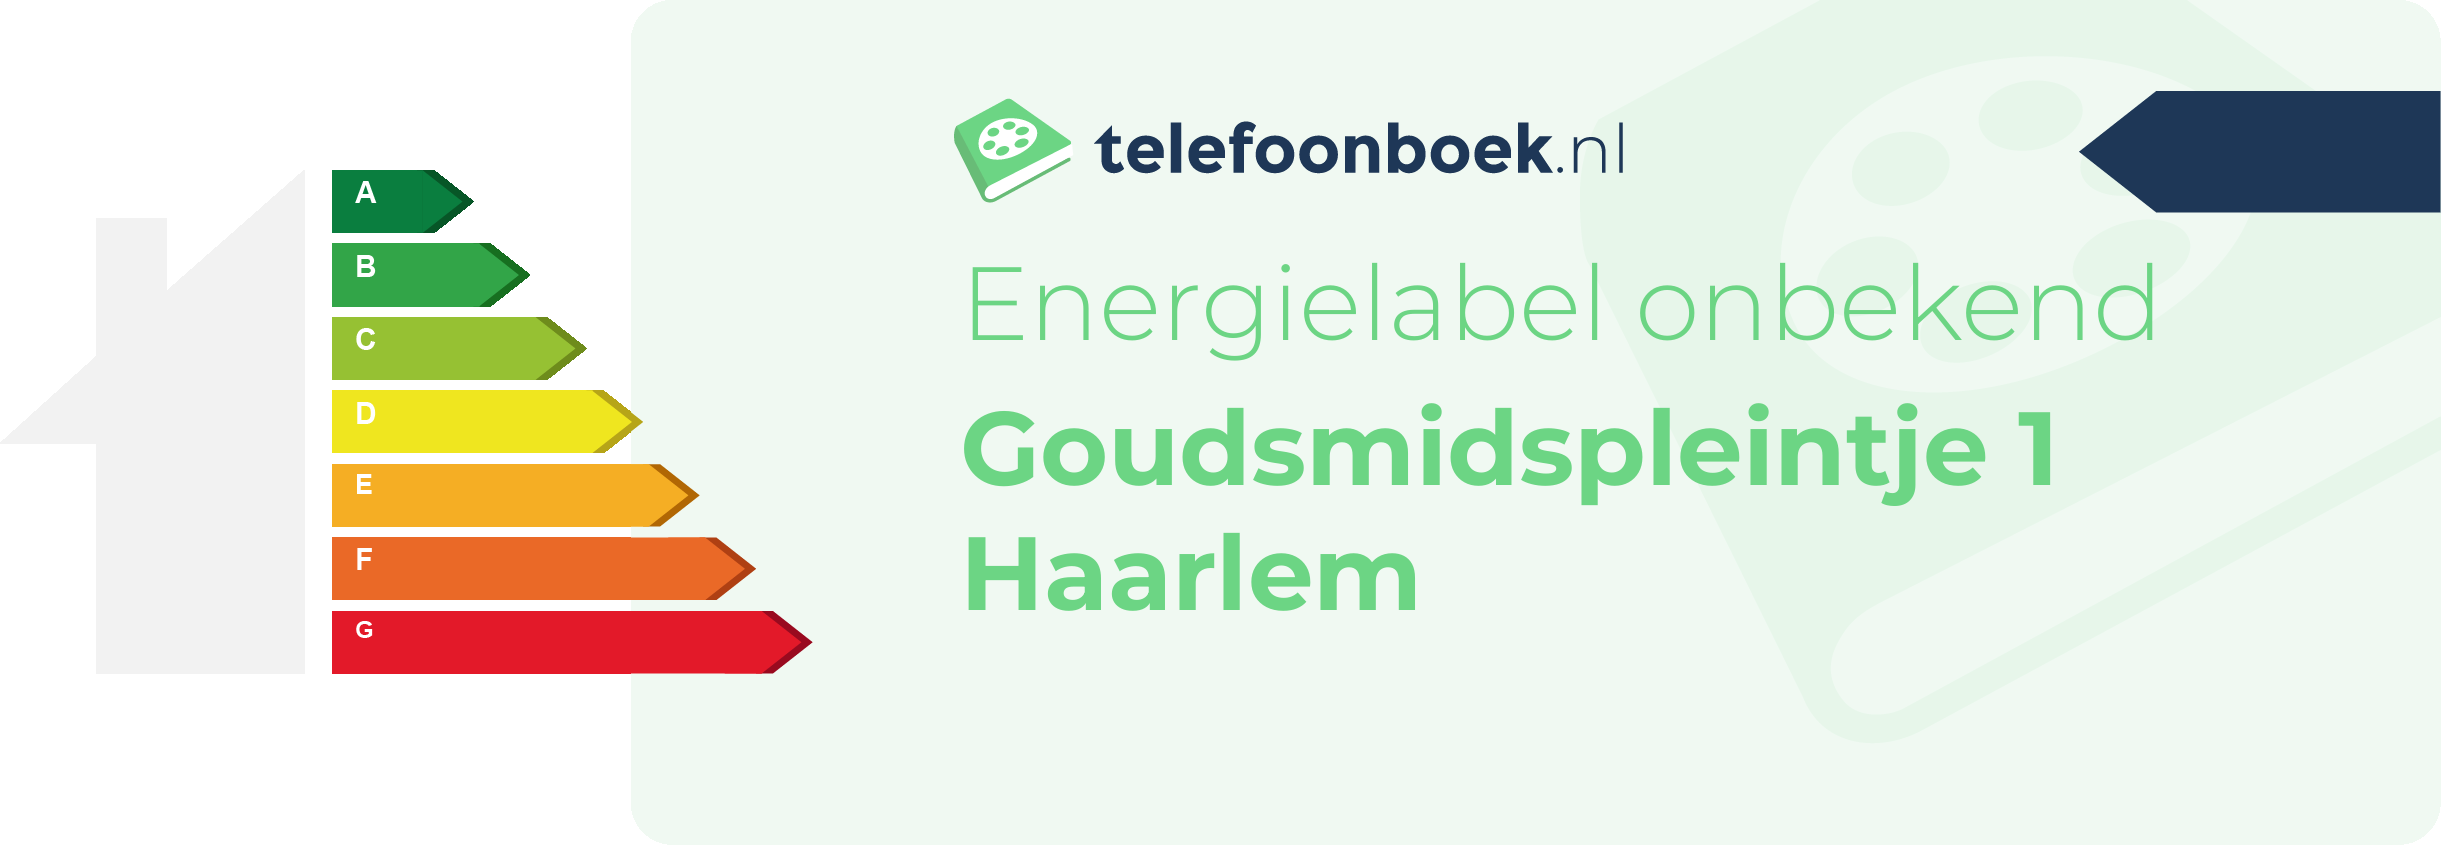 Energielabel Goudsmidspleintje 1 Haarlem